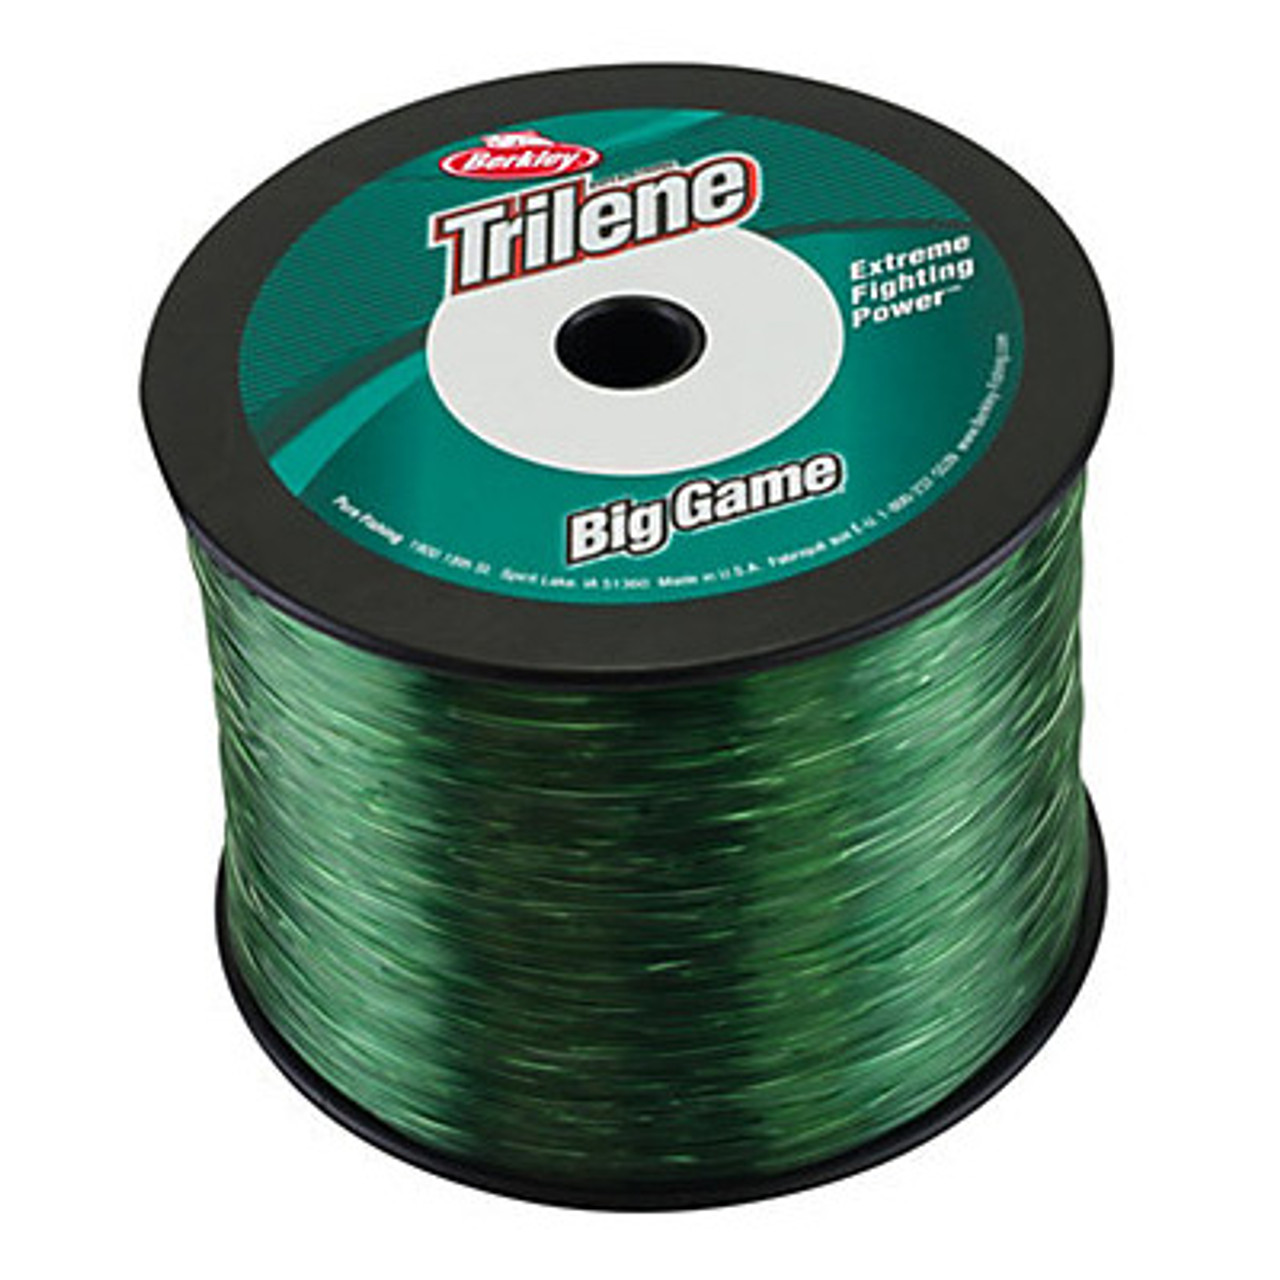 Berkley Trilene Big Game , Green